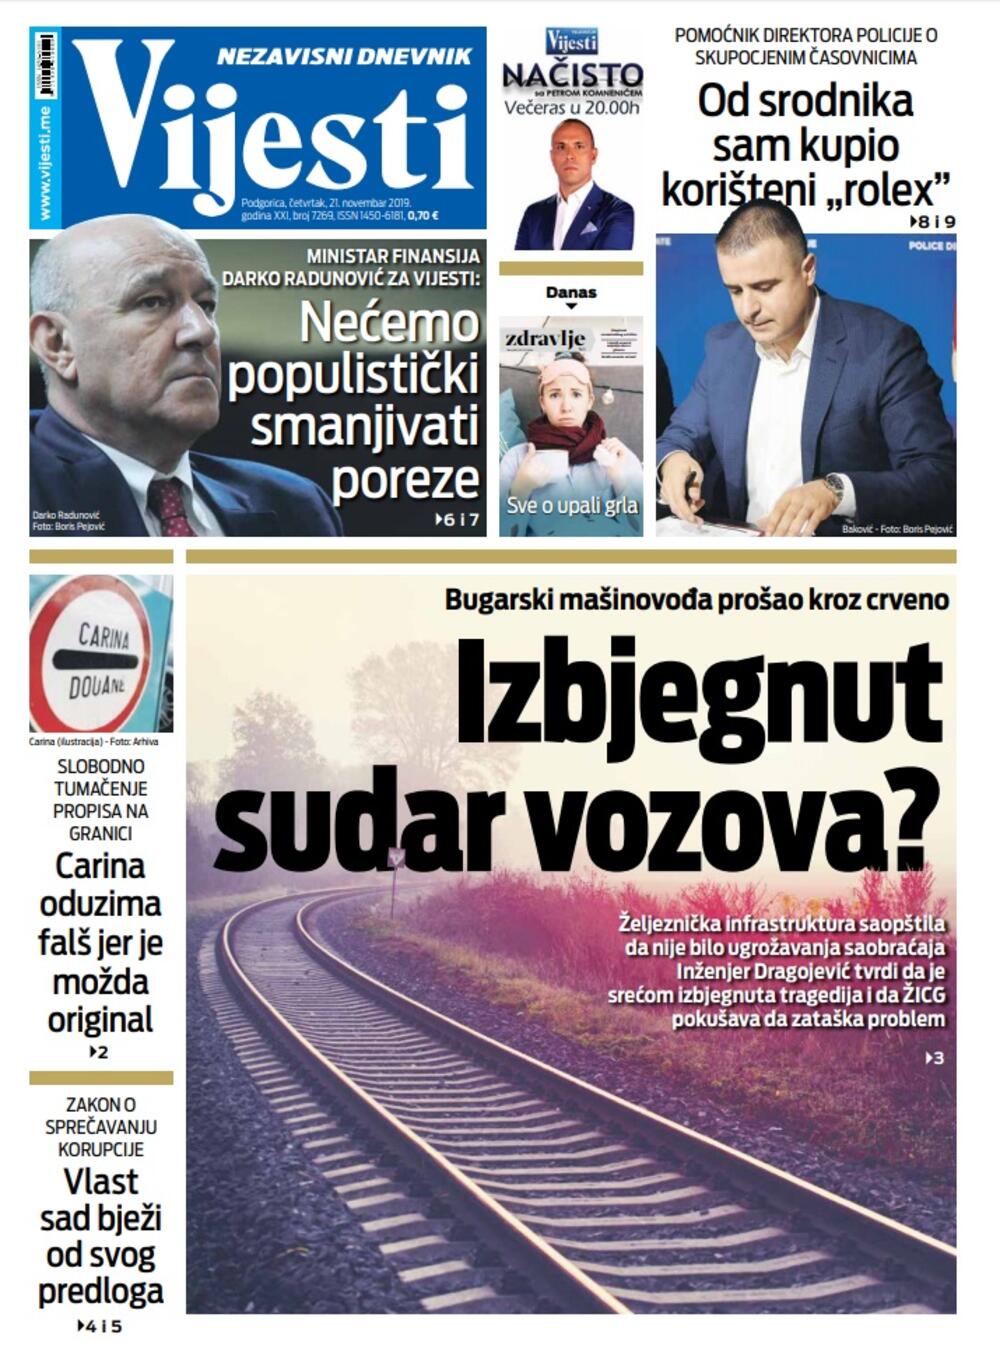 Naslovna strana "Vijesti" za 21. novembar 2019., Foto: Vijesti